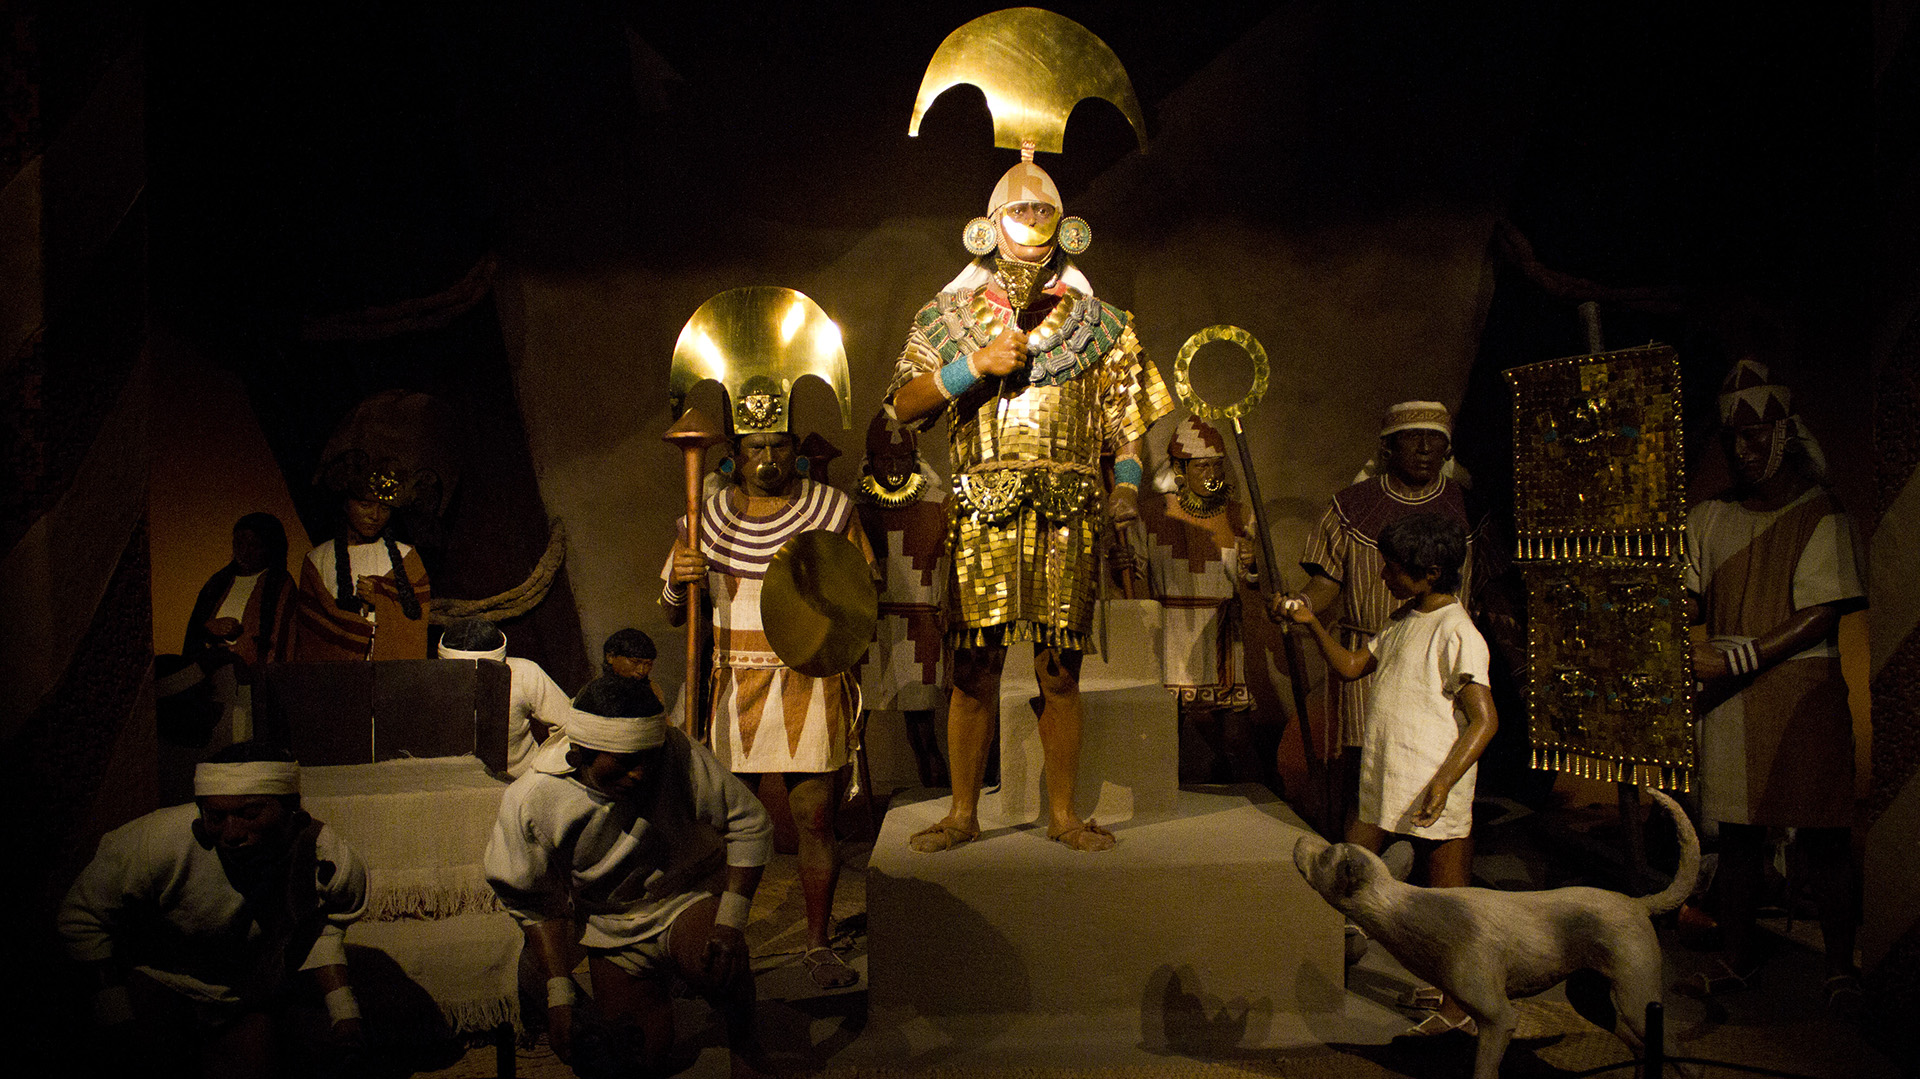 Representación del Señor de Sipán y su séquito, en el Museo Tumbas Reales de Sipán